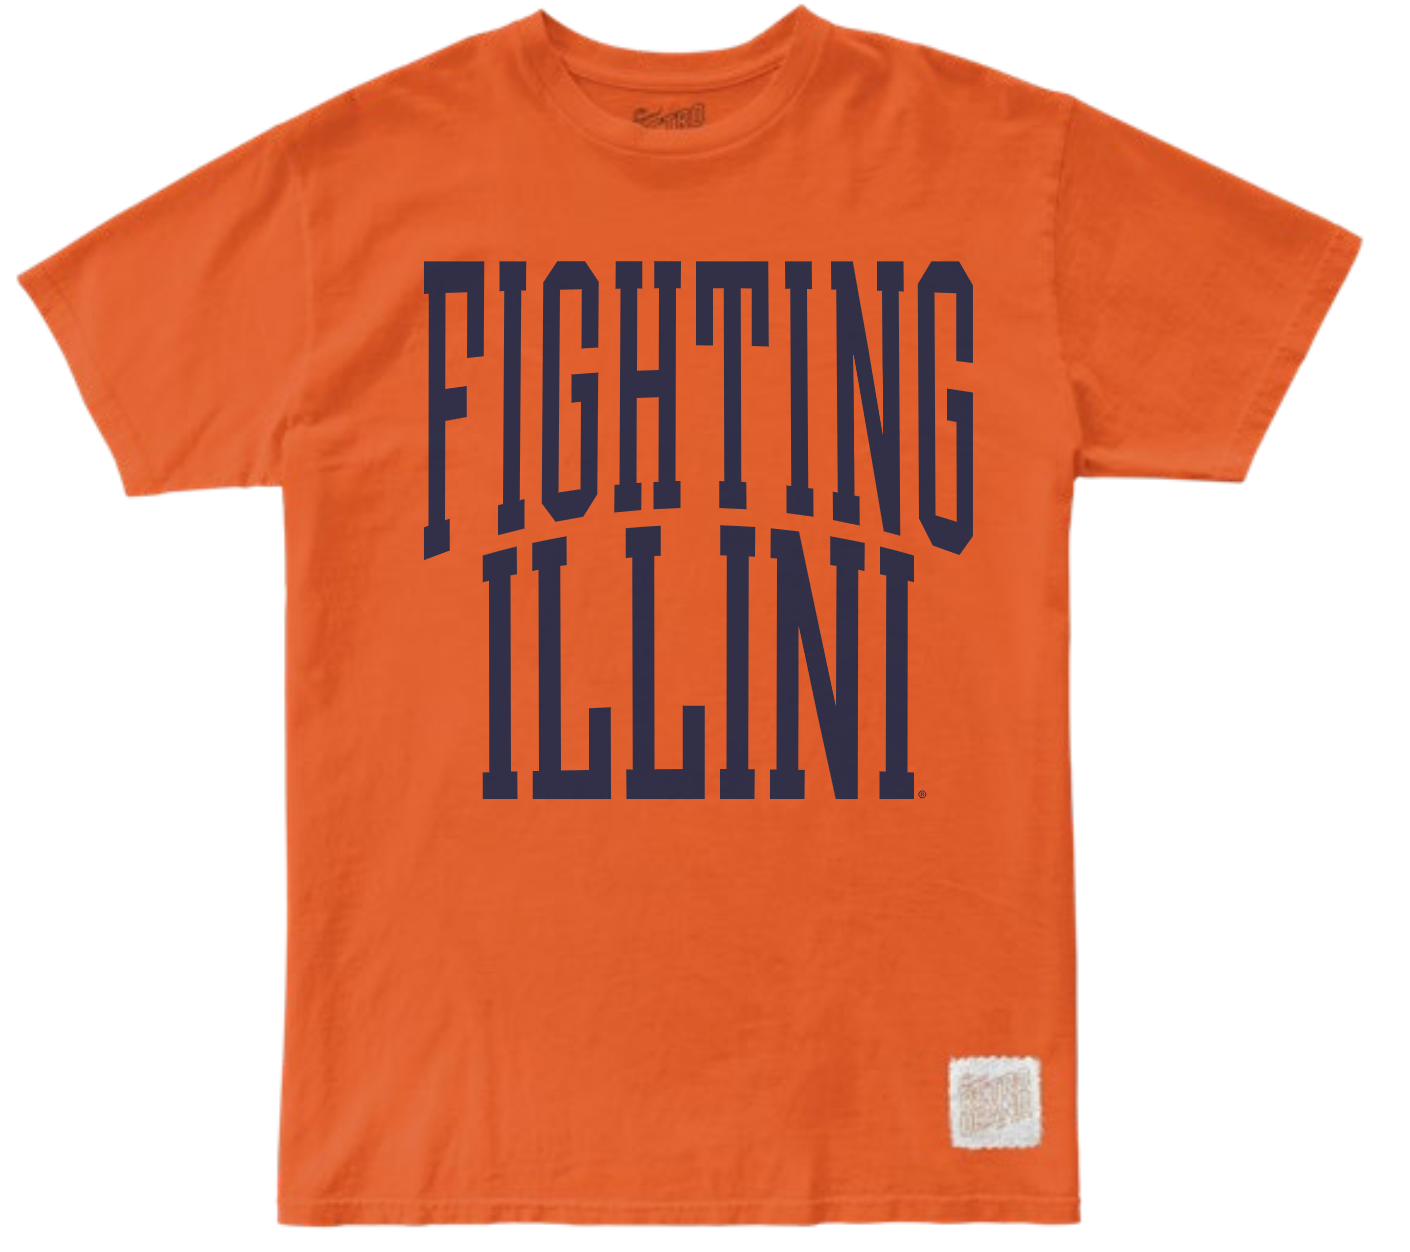 Illinois Fighting Illini 100% Cotton Unisex Tee